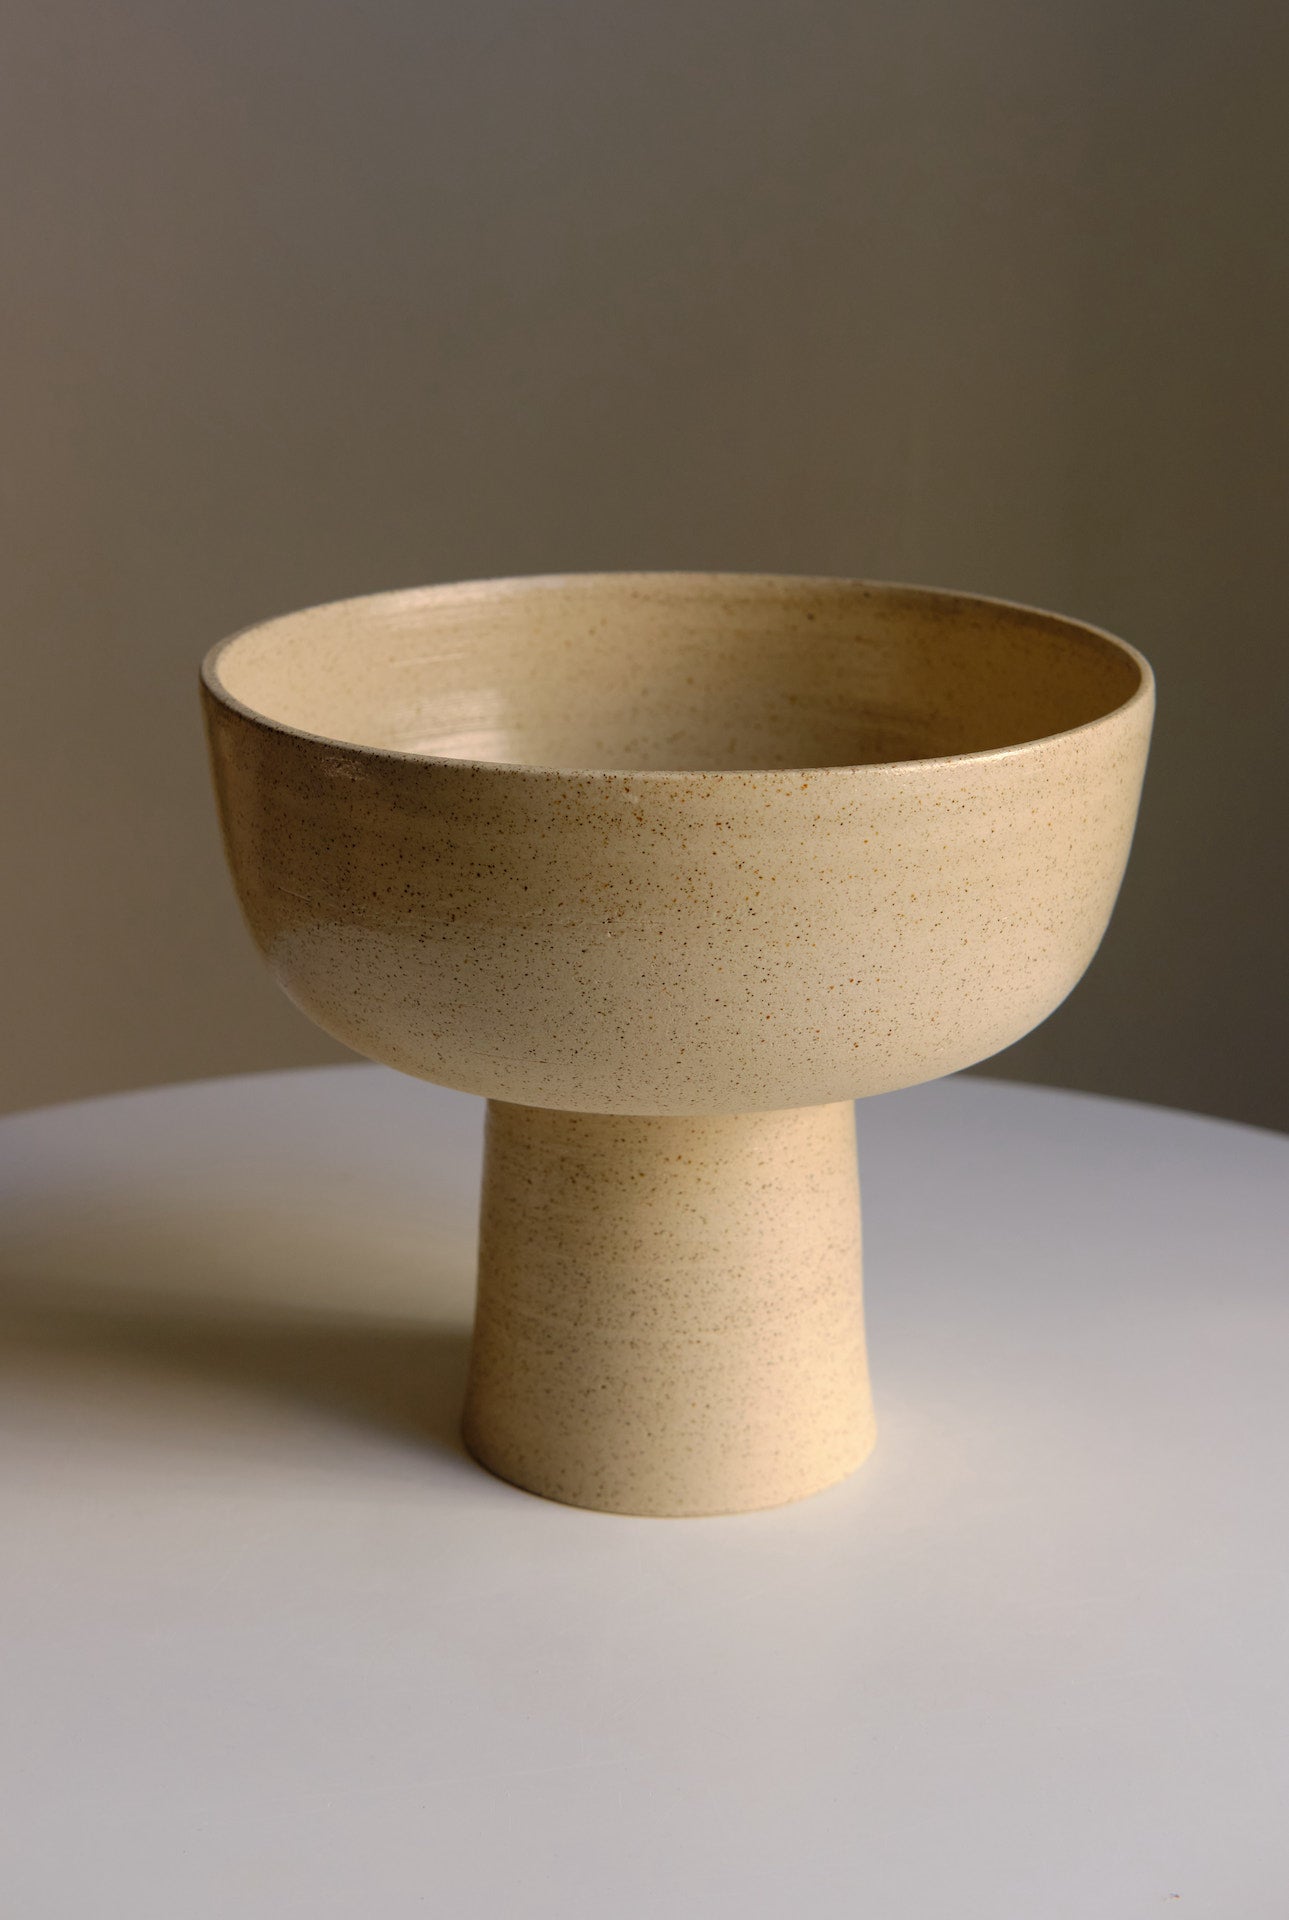 Pedestal bowl in Natural